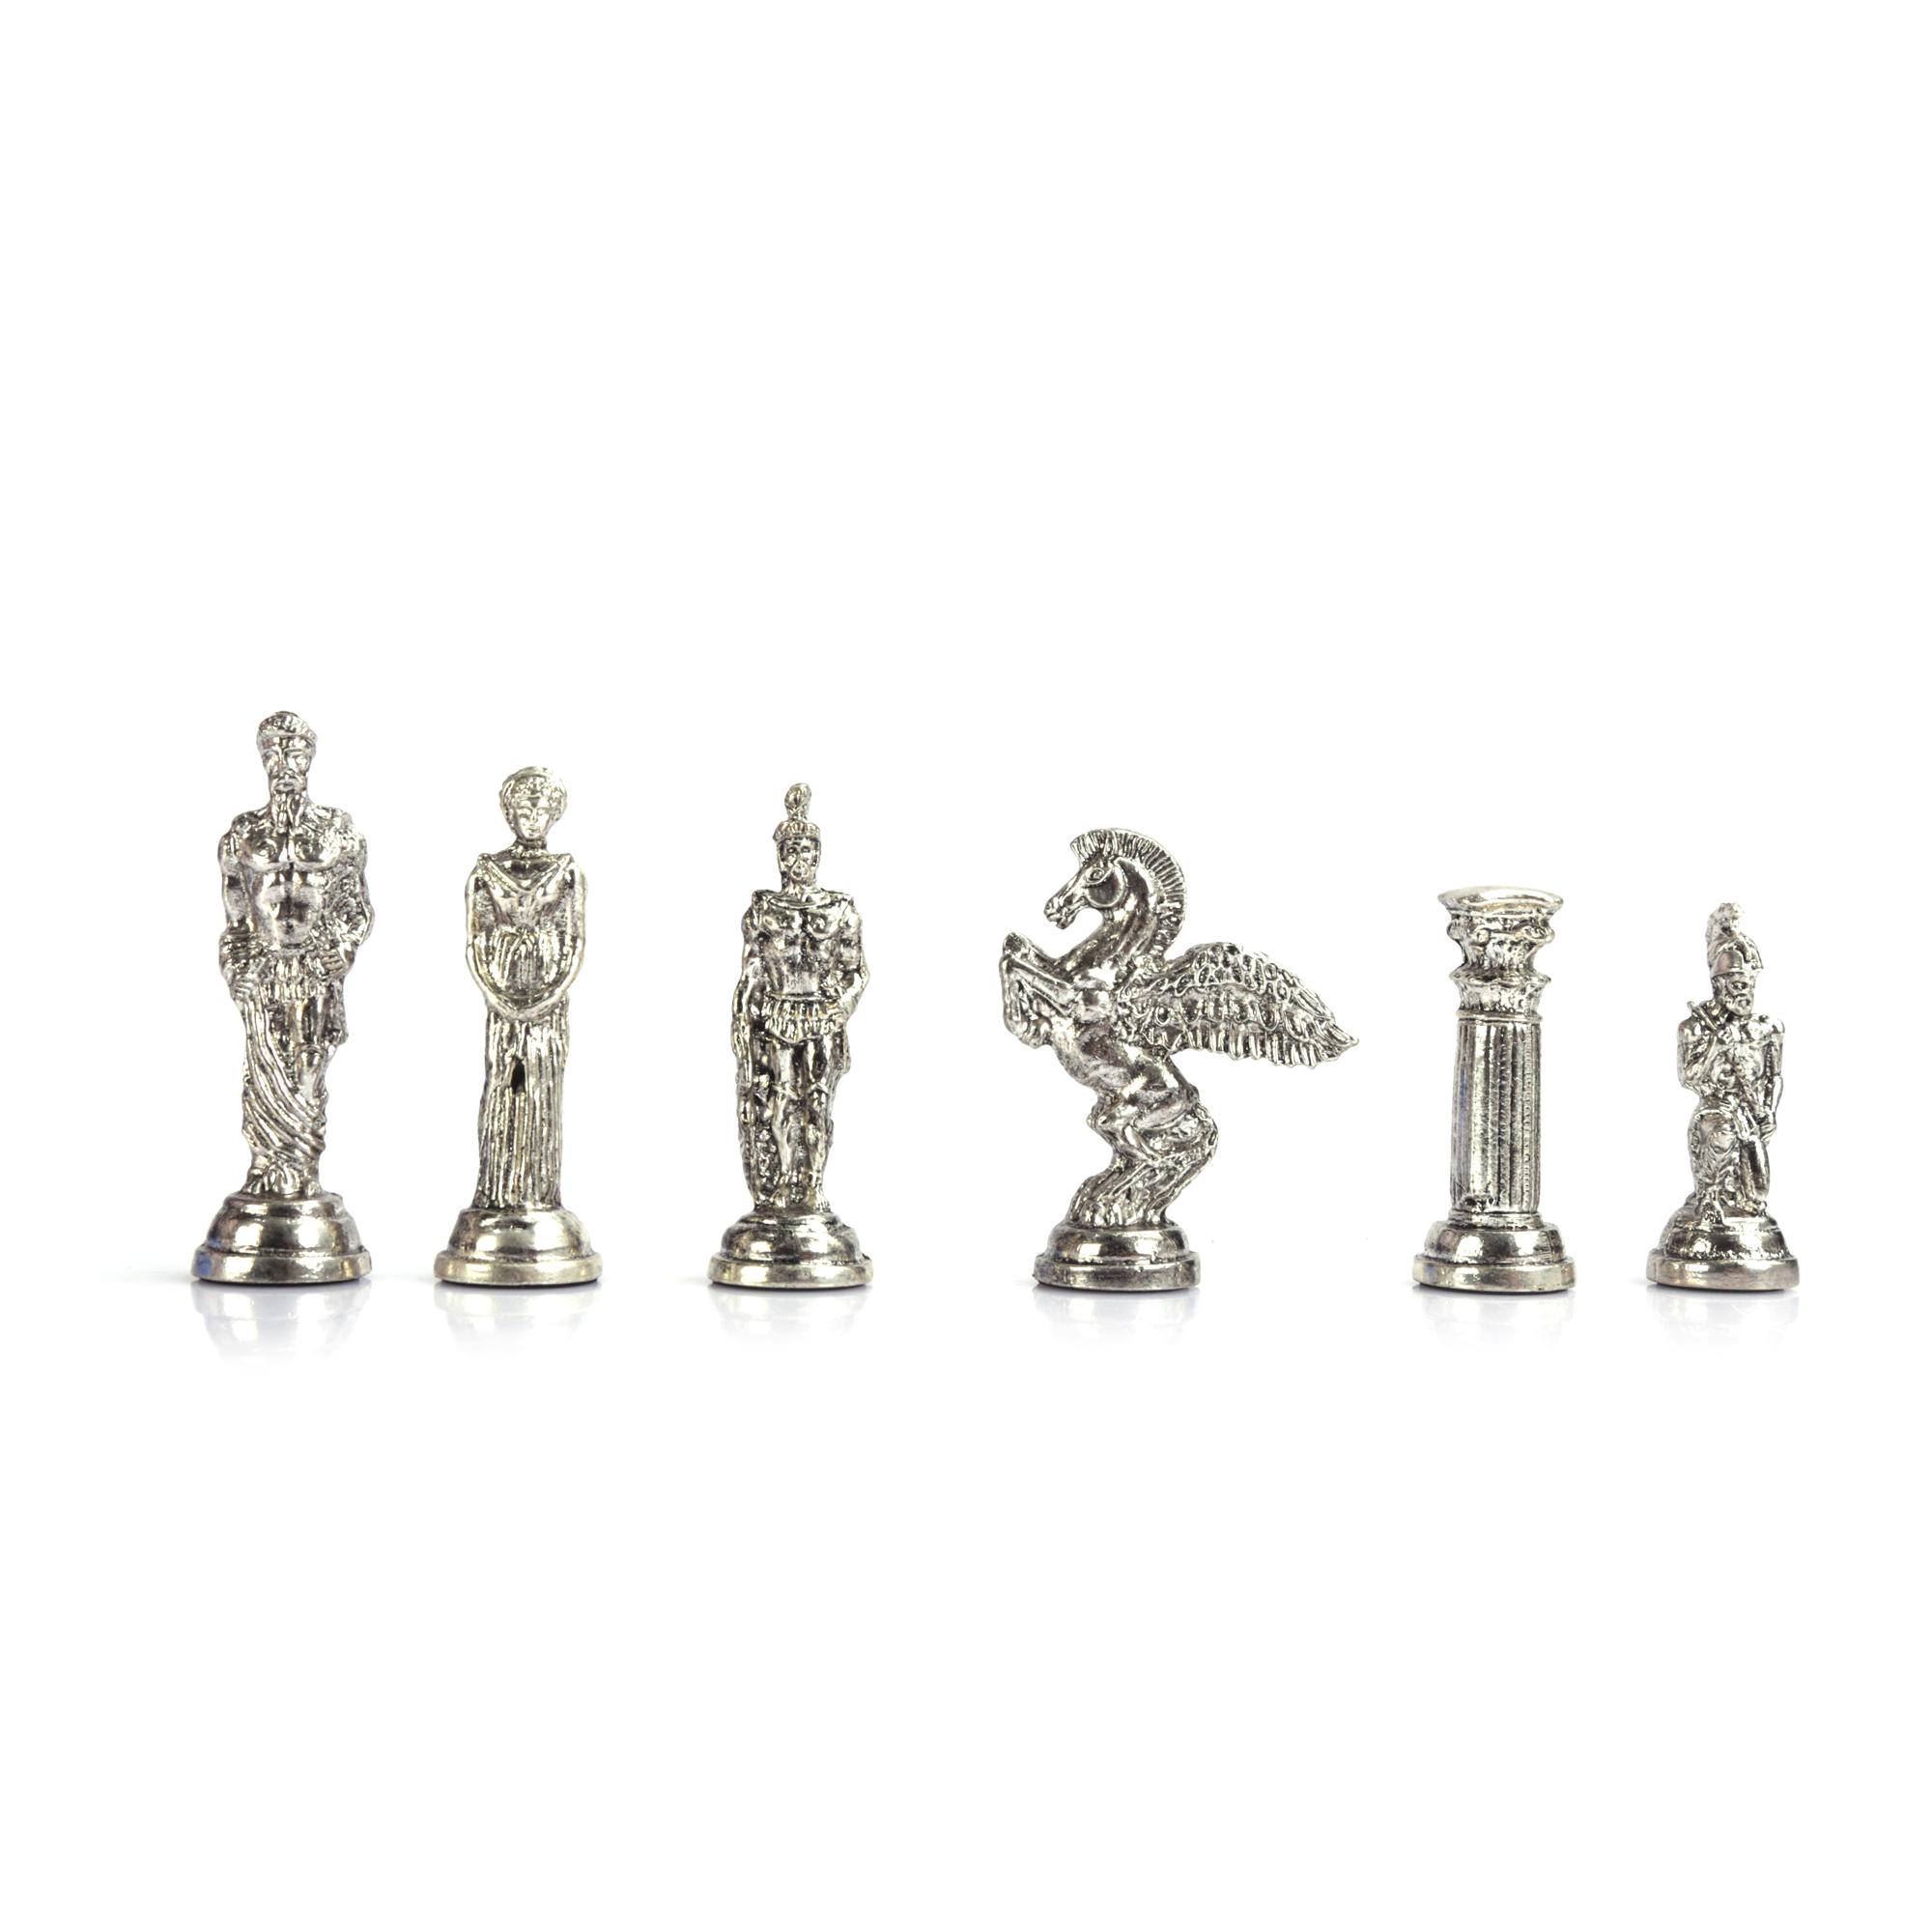 Изображение товара: (Только шахматные фигуры) мифологические пегасы, металлические шахматные фигуры большого размера 9,5 см (доска не входит в комплект)